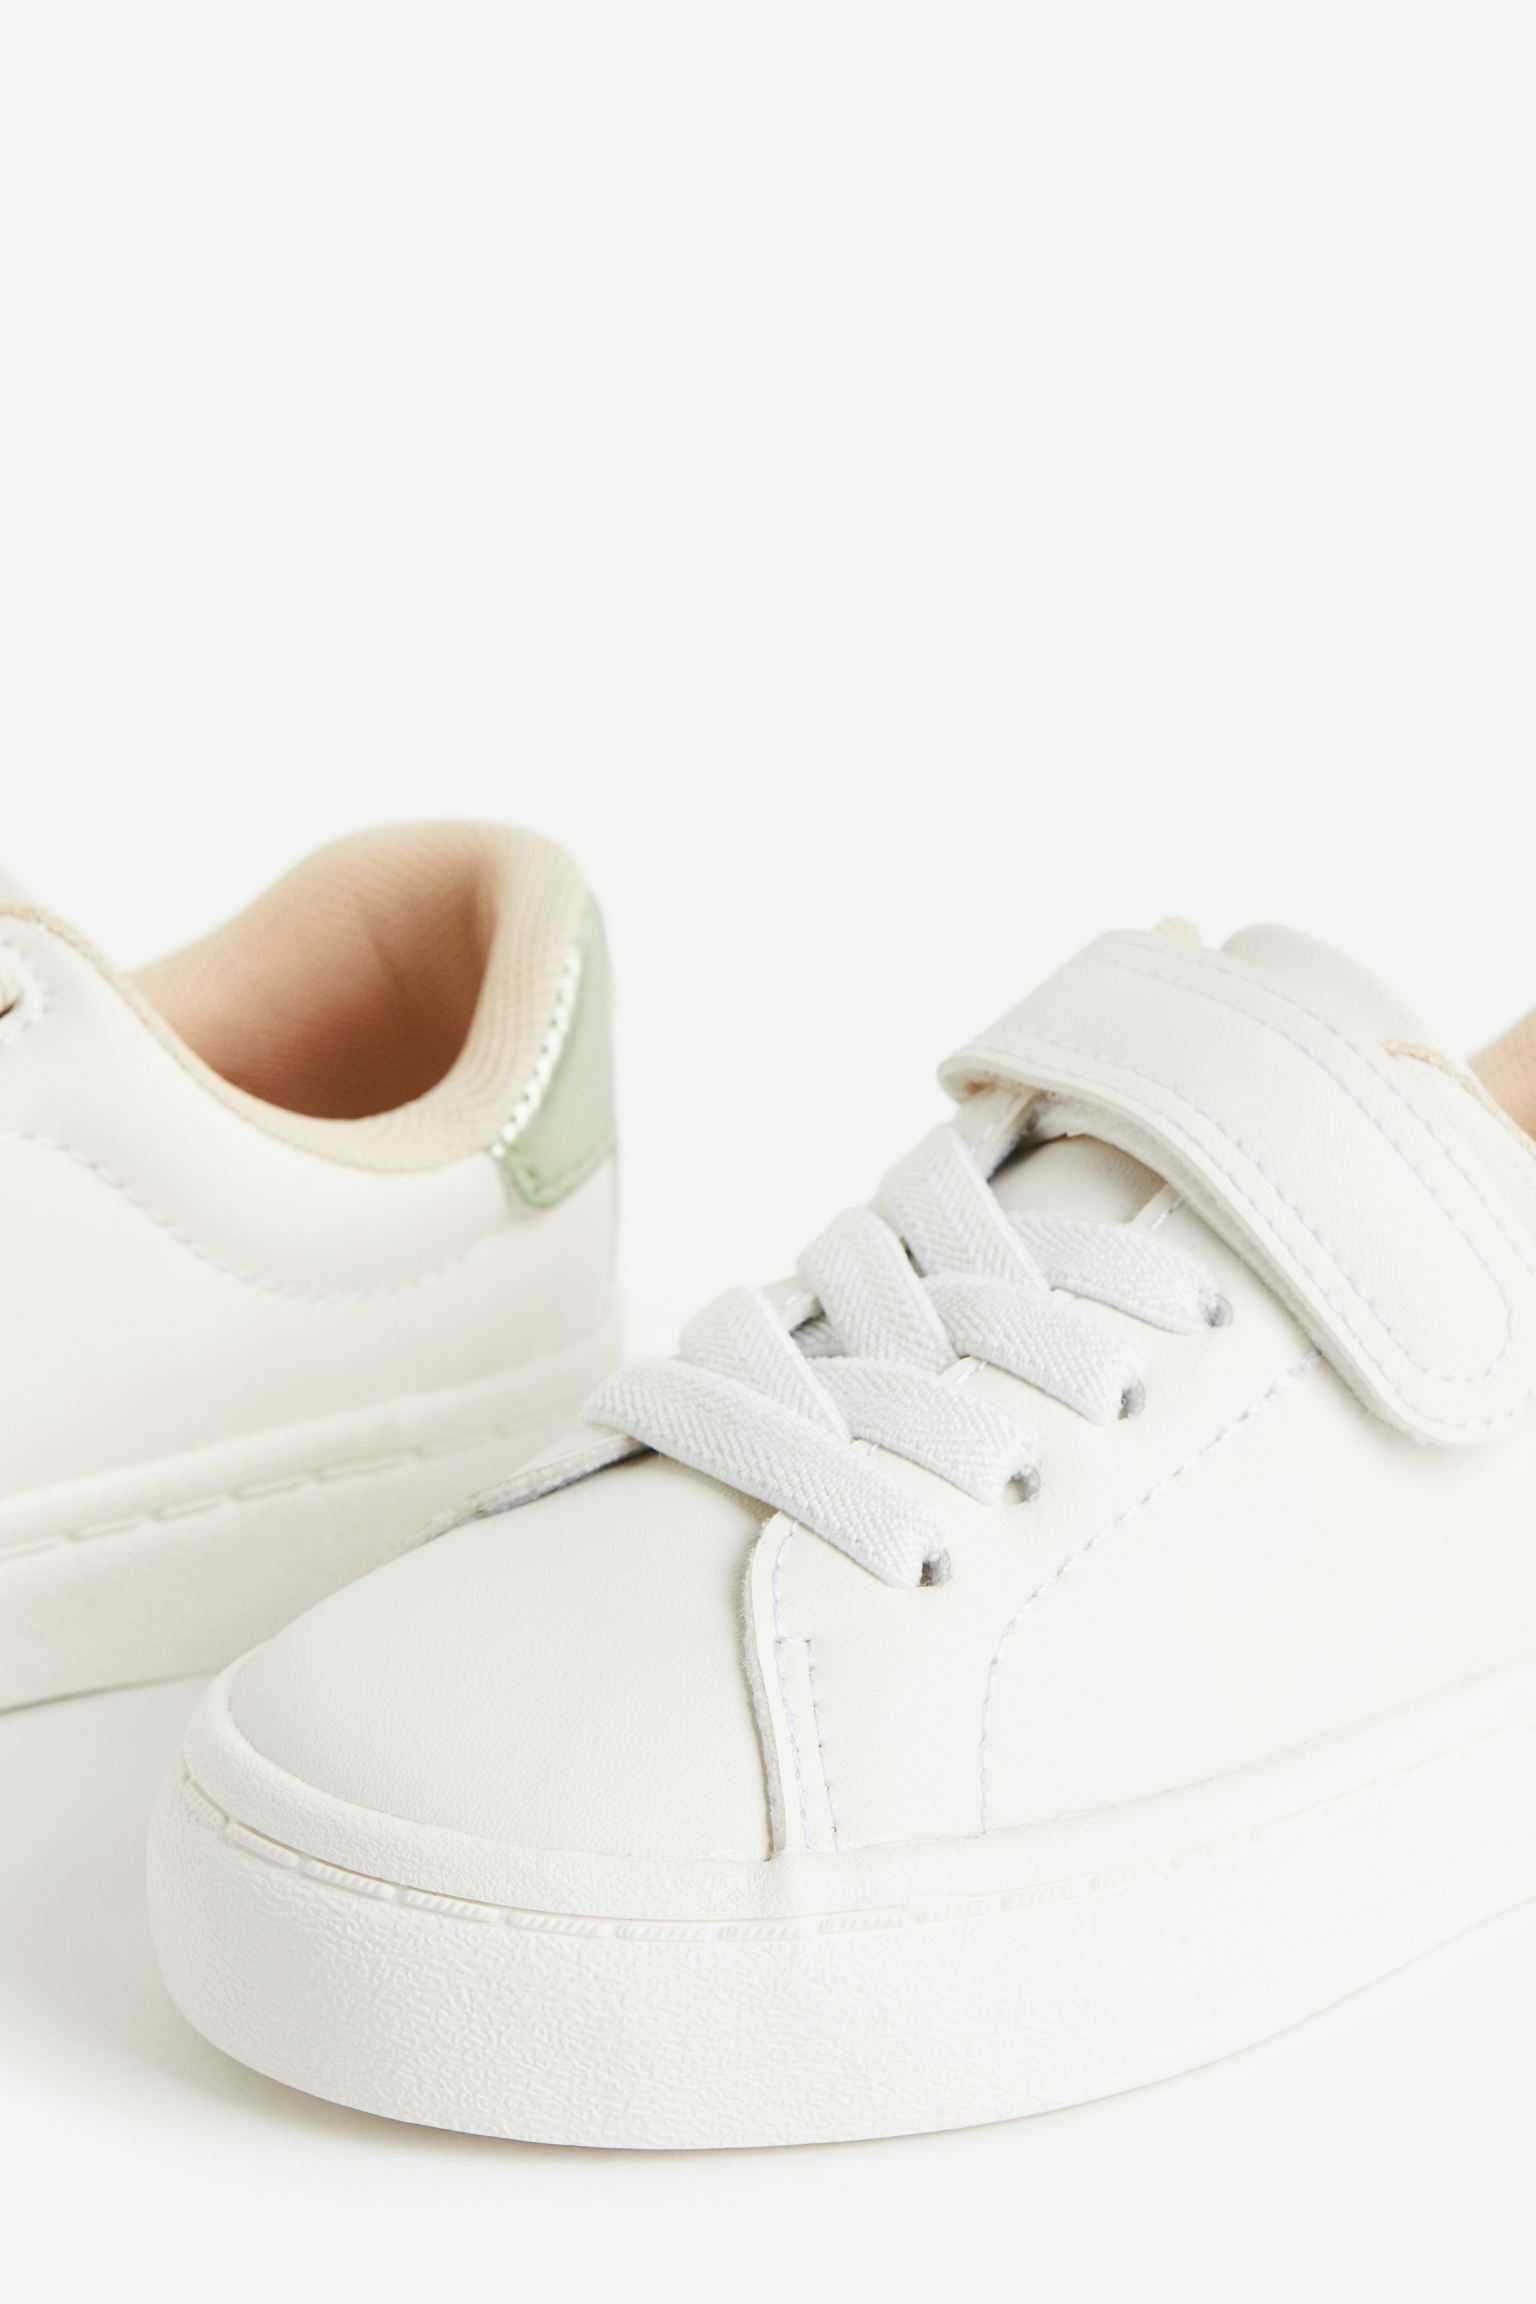 Кеди кросівки H&M нові 26,27,28,29 р дитячі білі